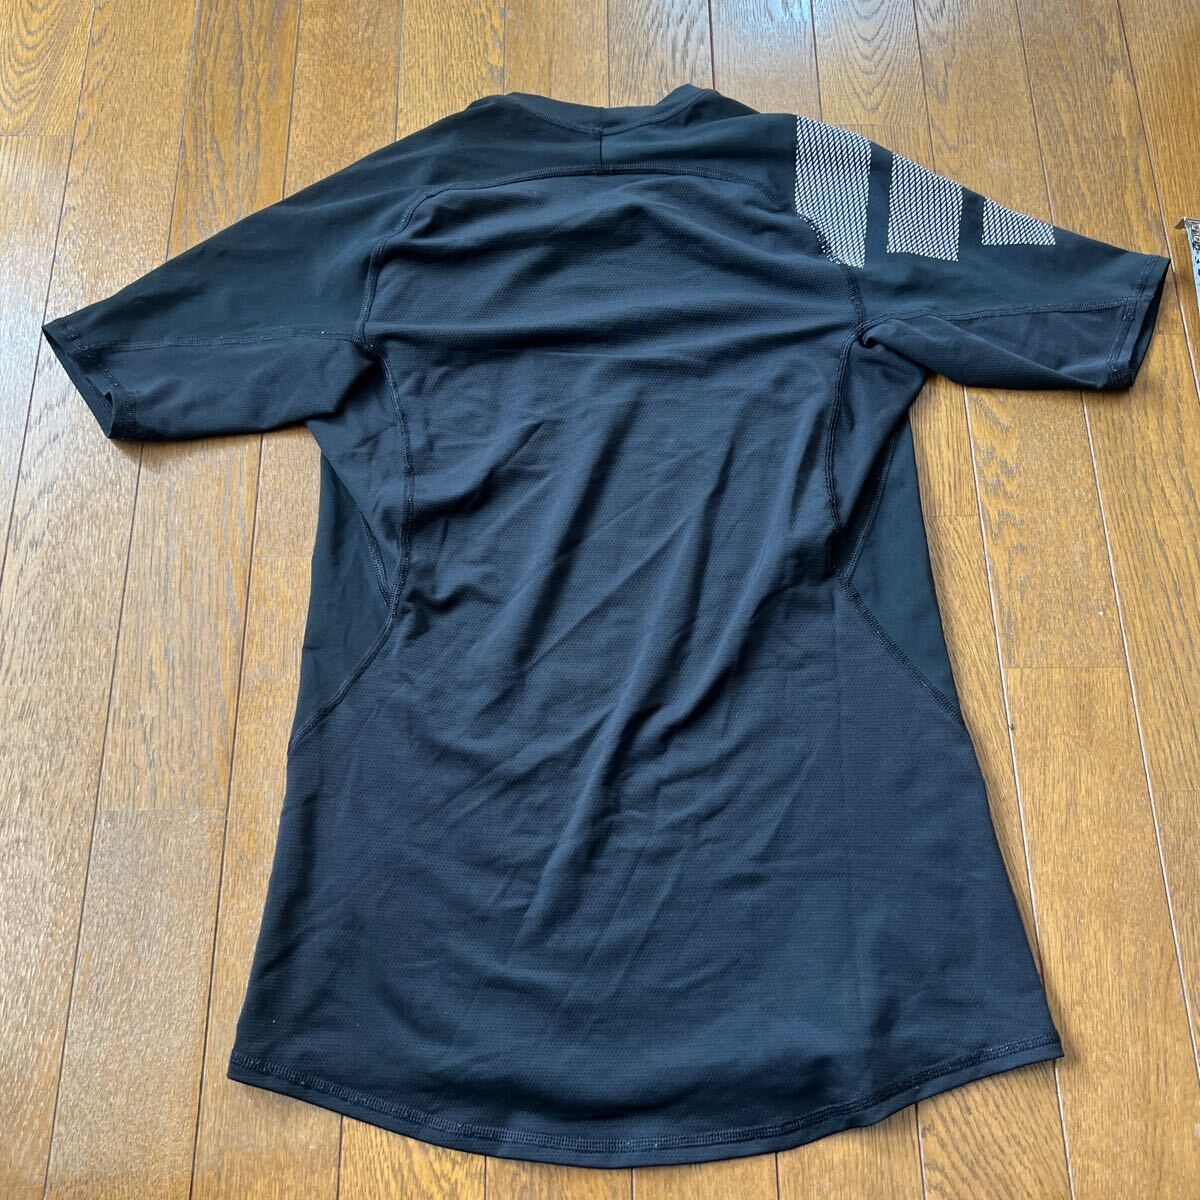 Adidas ALPHASHIN короткий рукав футболка чёрный тренировка 